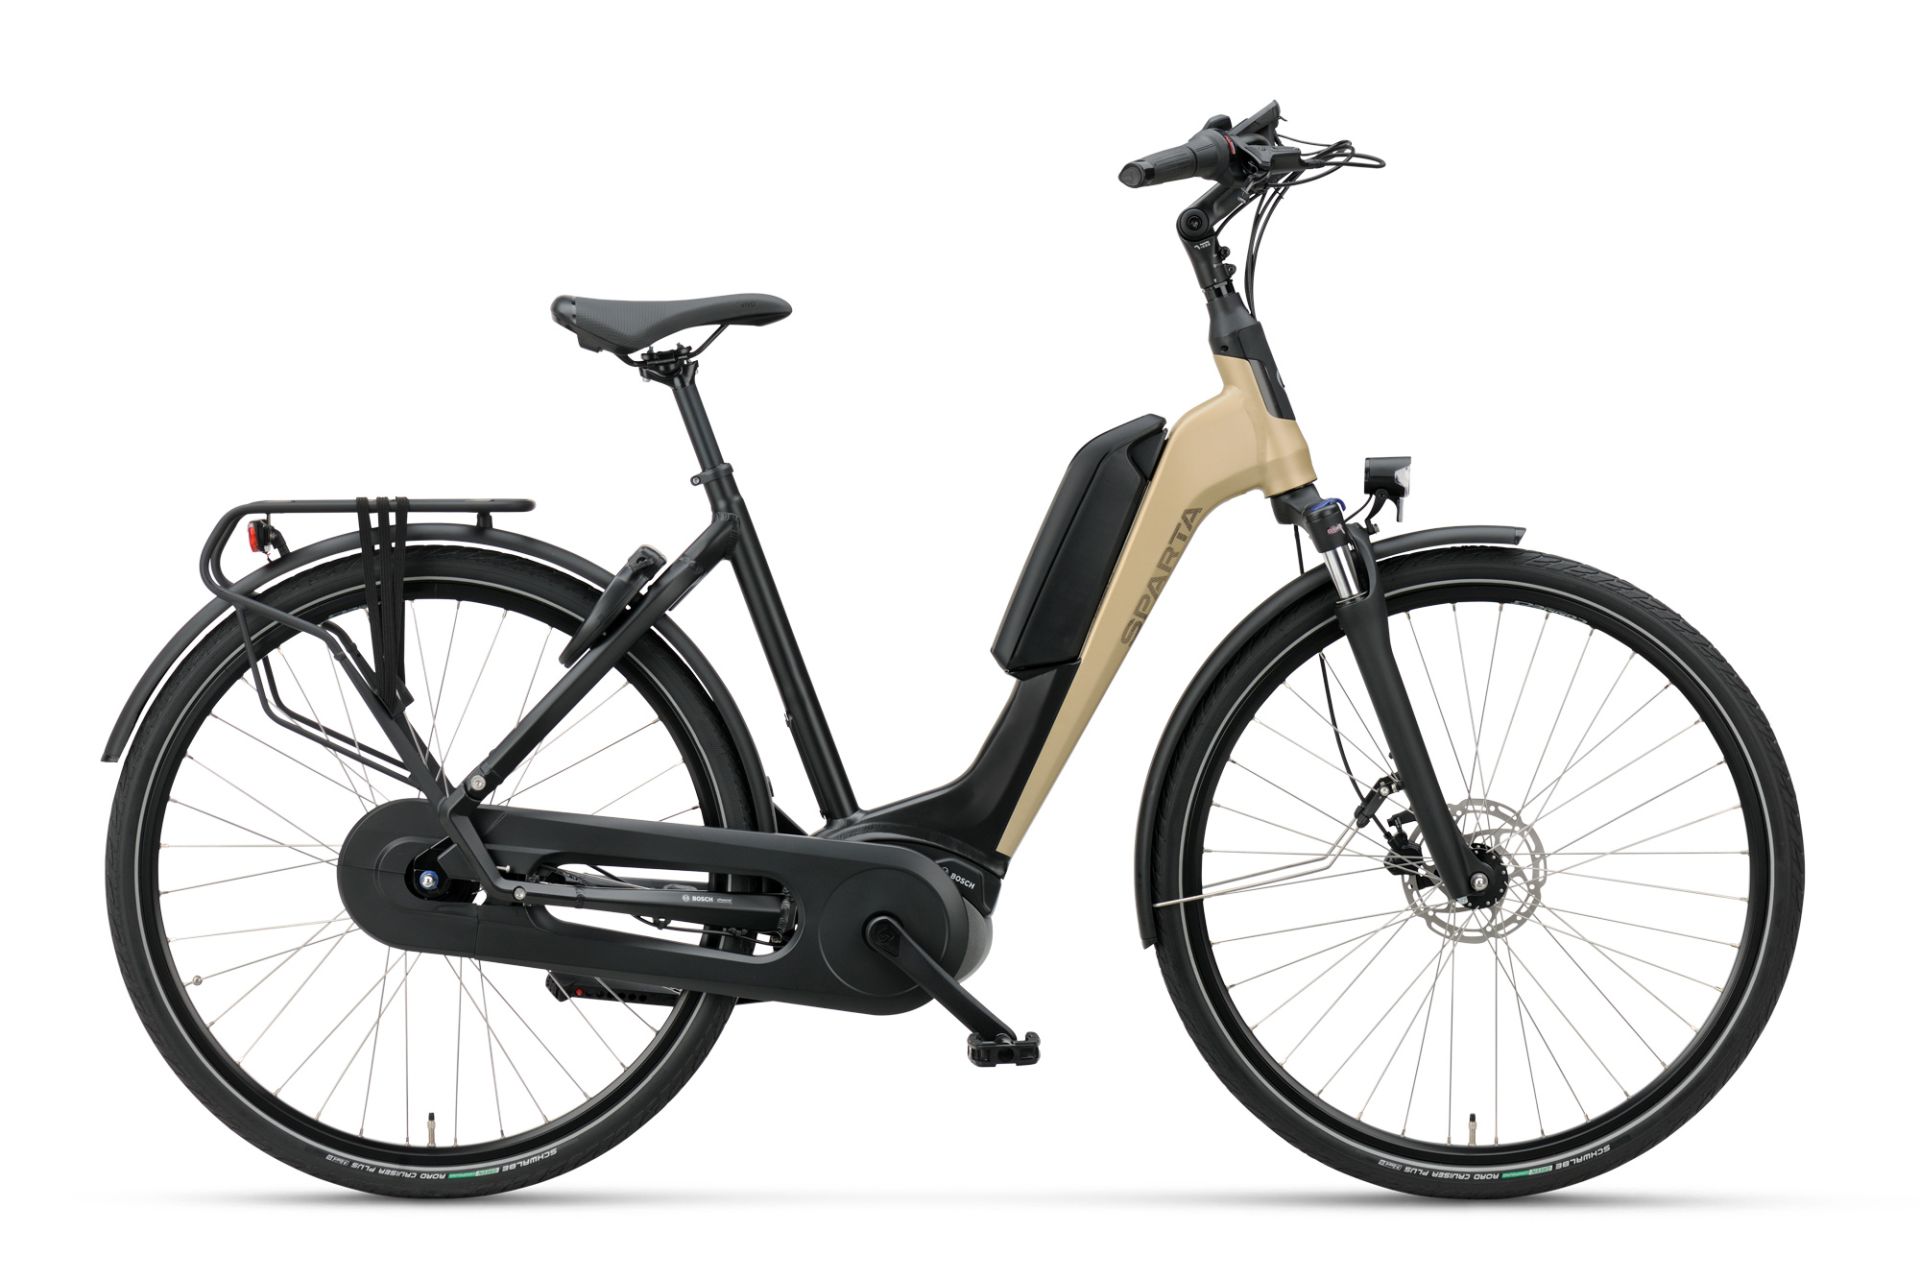 Verplicht Actuator lancering Aanbiedingen - Elektrische fietsen outlet| Berry Bikes Valkenswaard